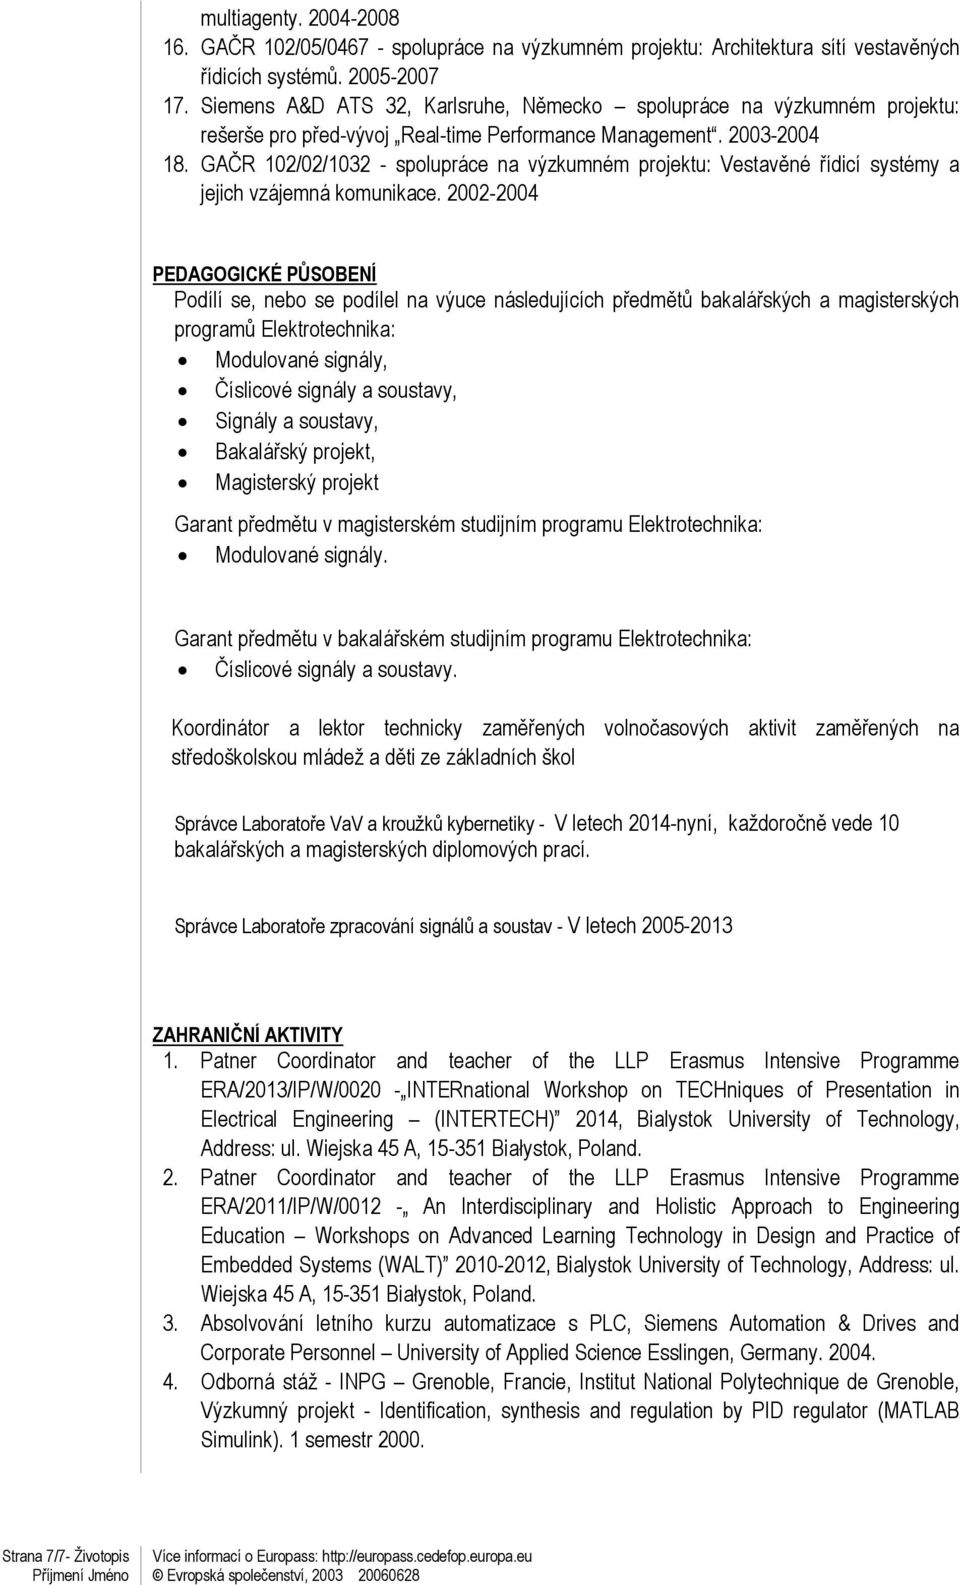 GAČR 102/02/1032 - spolupráce na výzkumném projektu: Vestavěné řídicí systémy a jejich vzájemná komunikace.